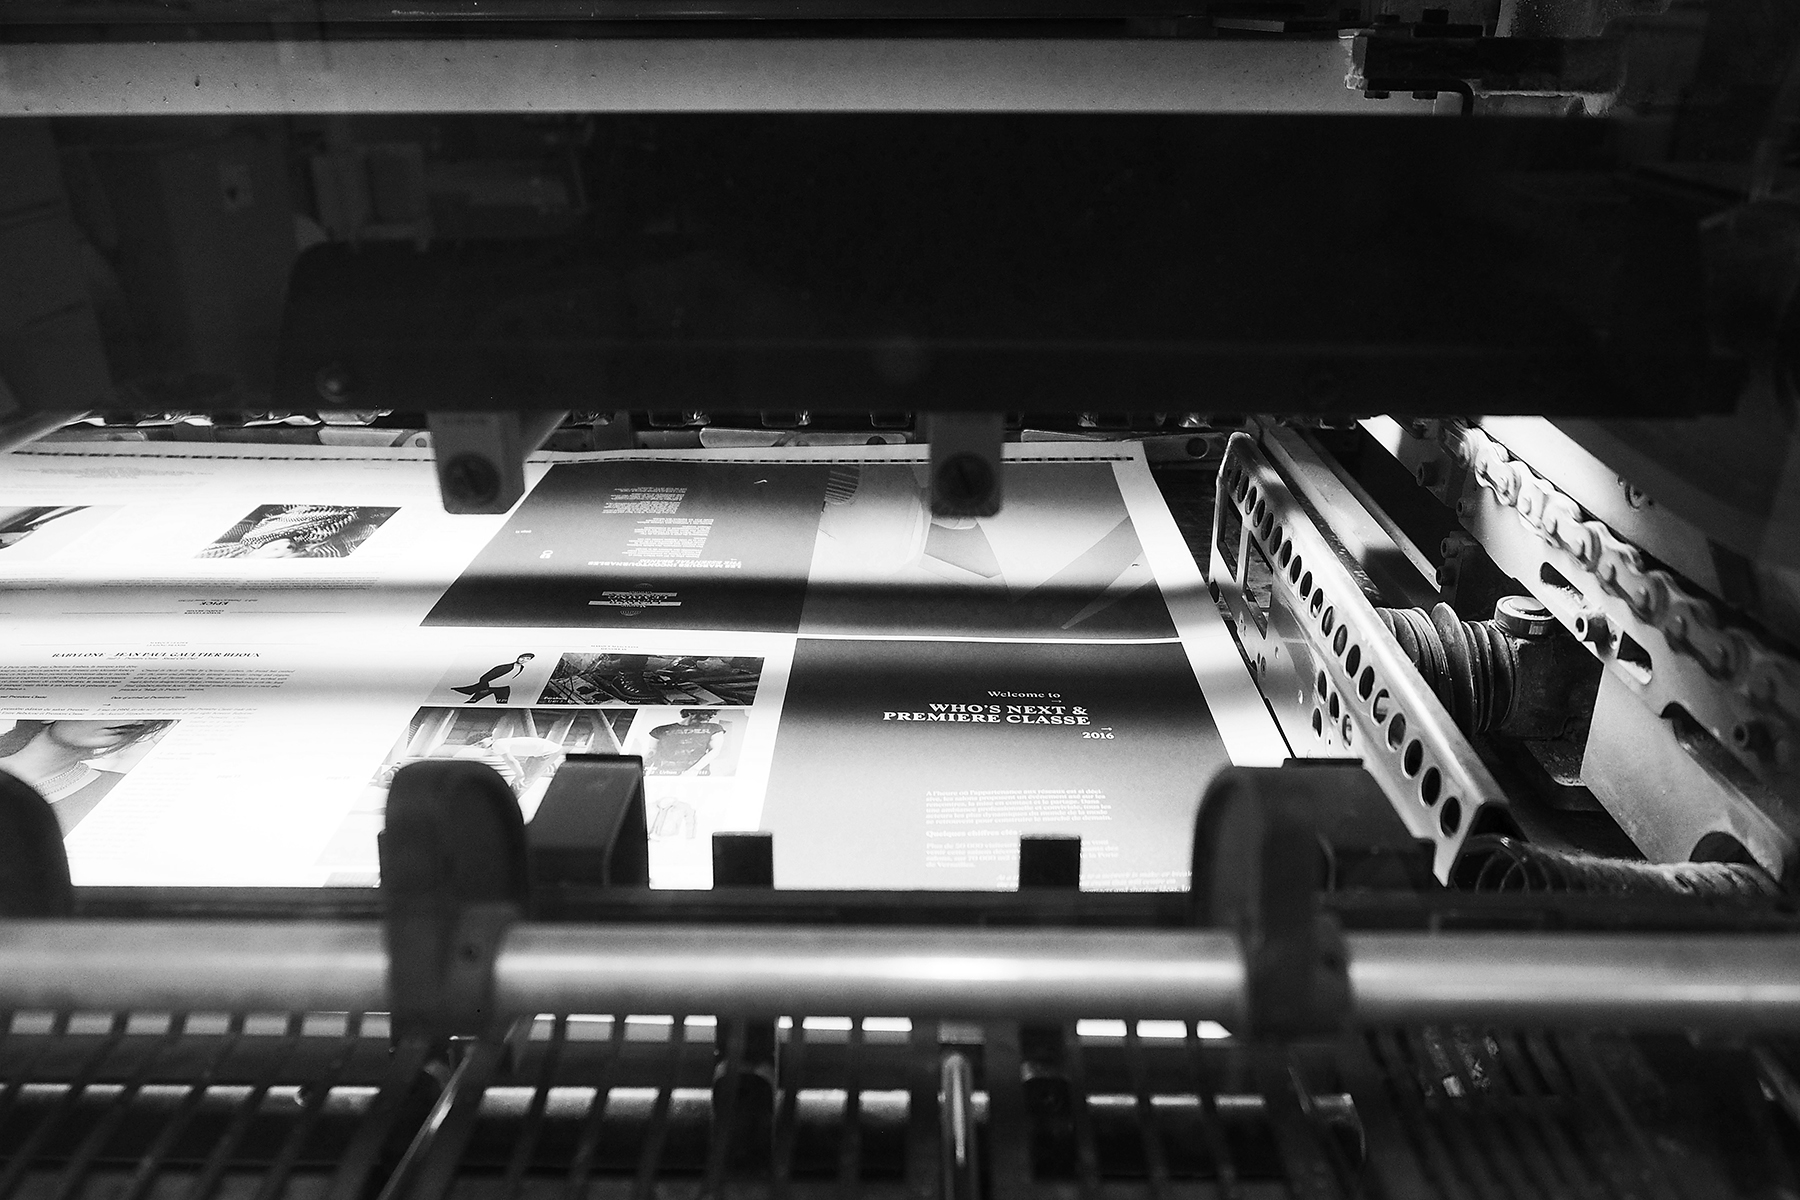 Imprimerie moutot - imprimeur